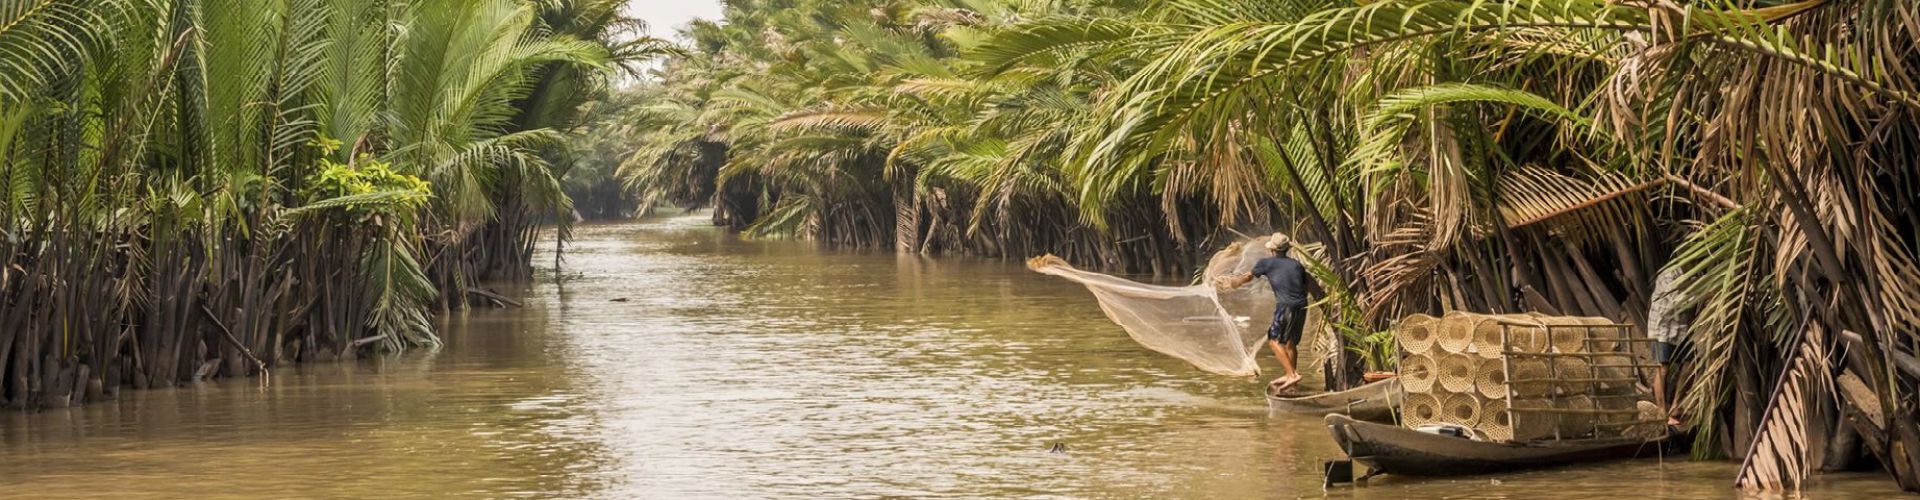 Destinations in Mekong Delta